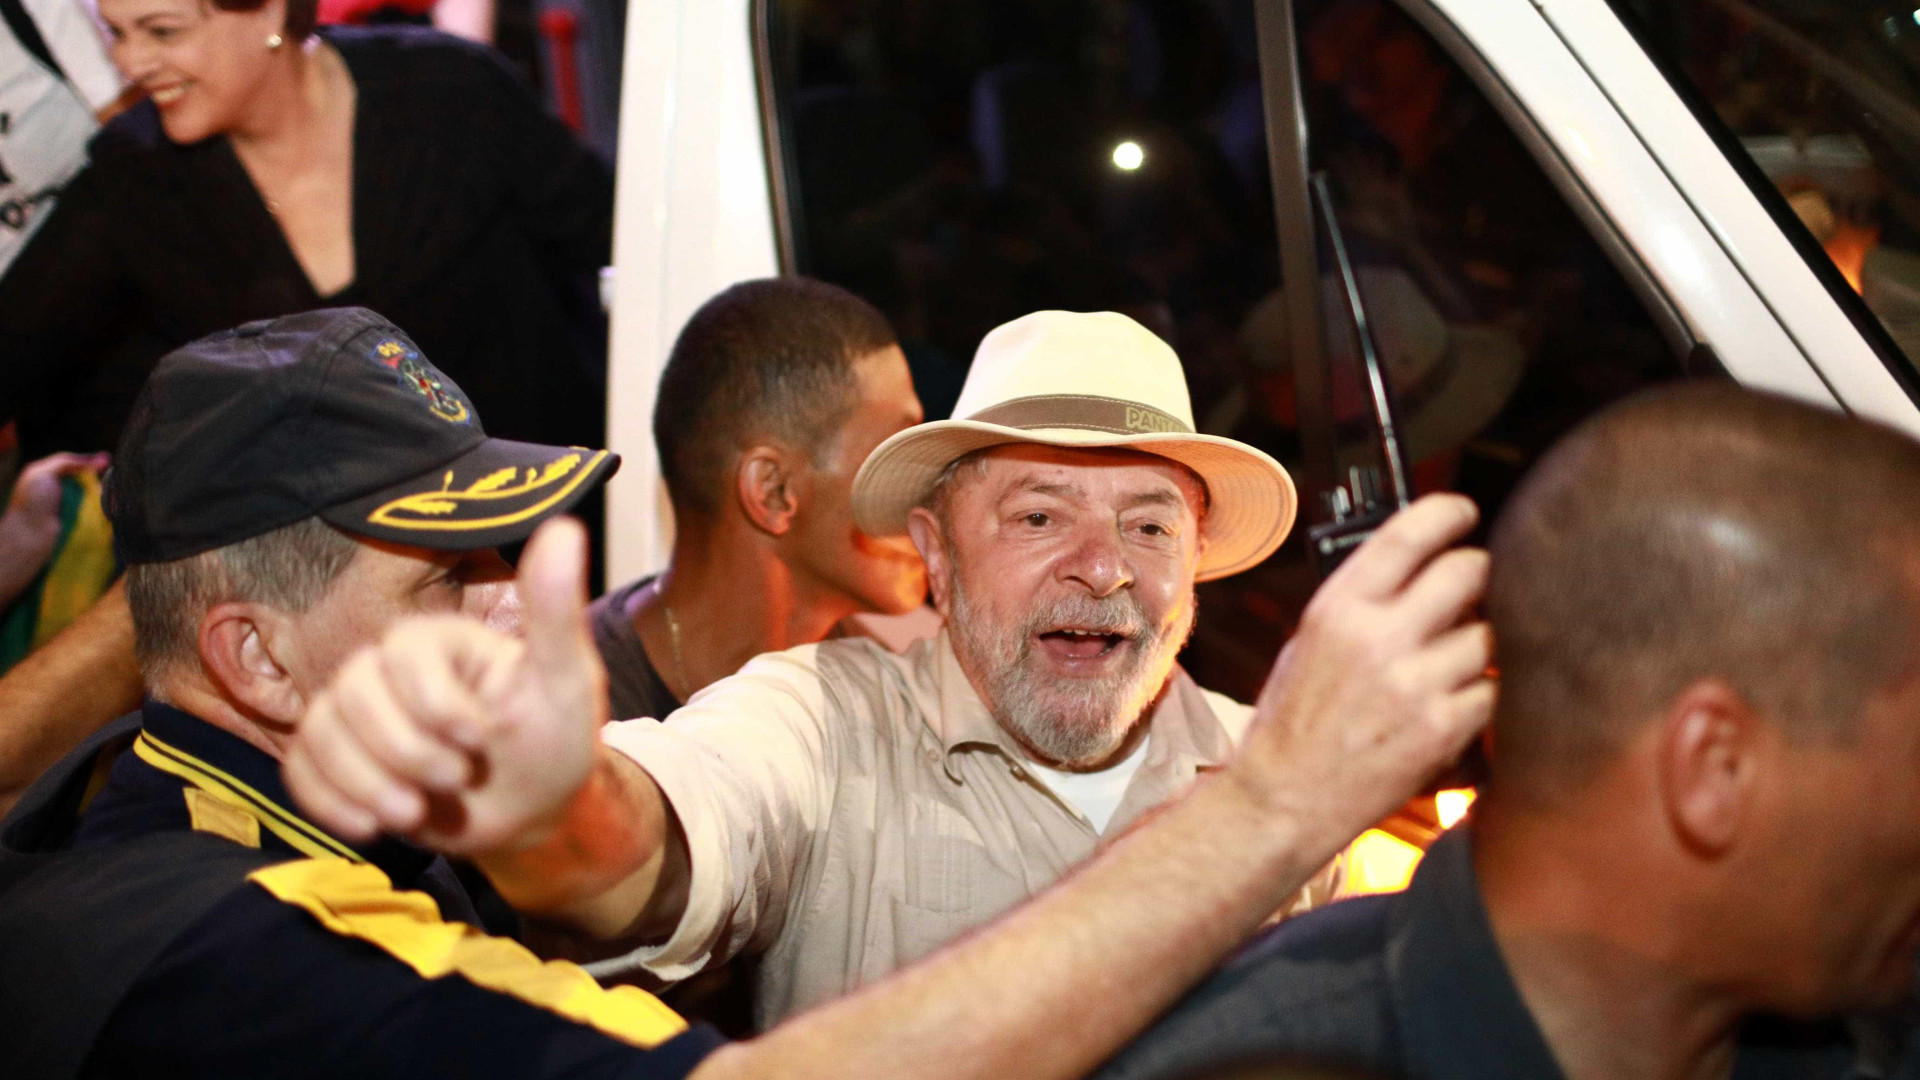 Caravana de Lula nÃ£o fez pedido de escolta, diz Secretaria de SeguranÃ§a